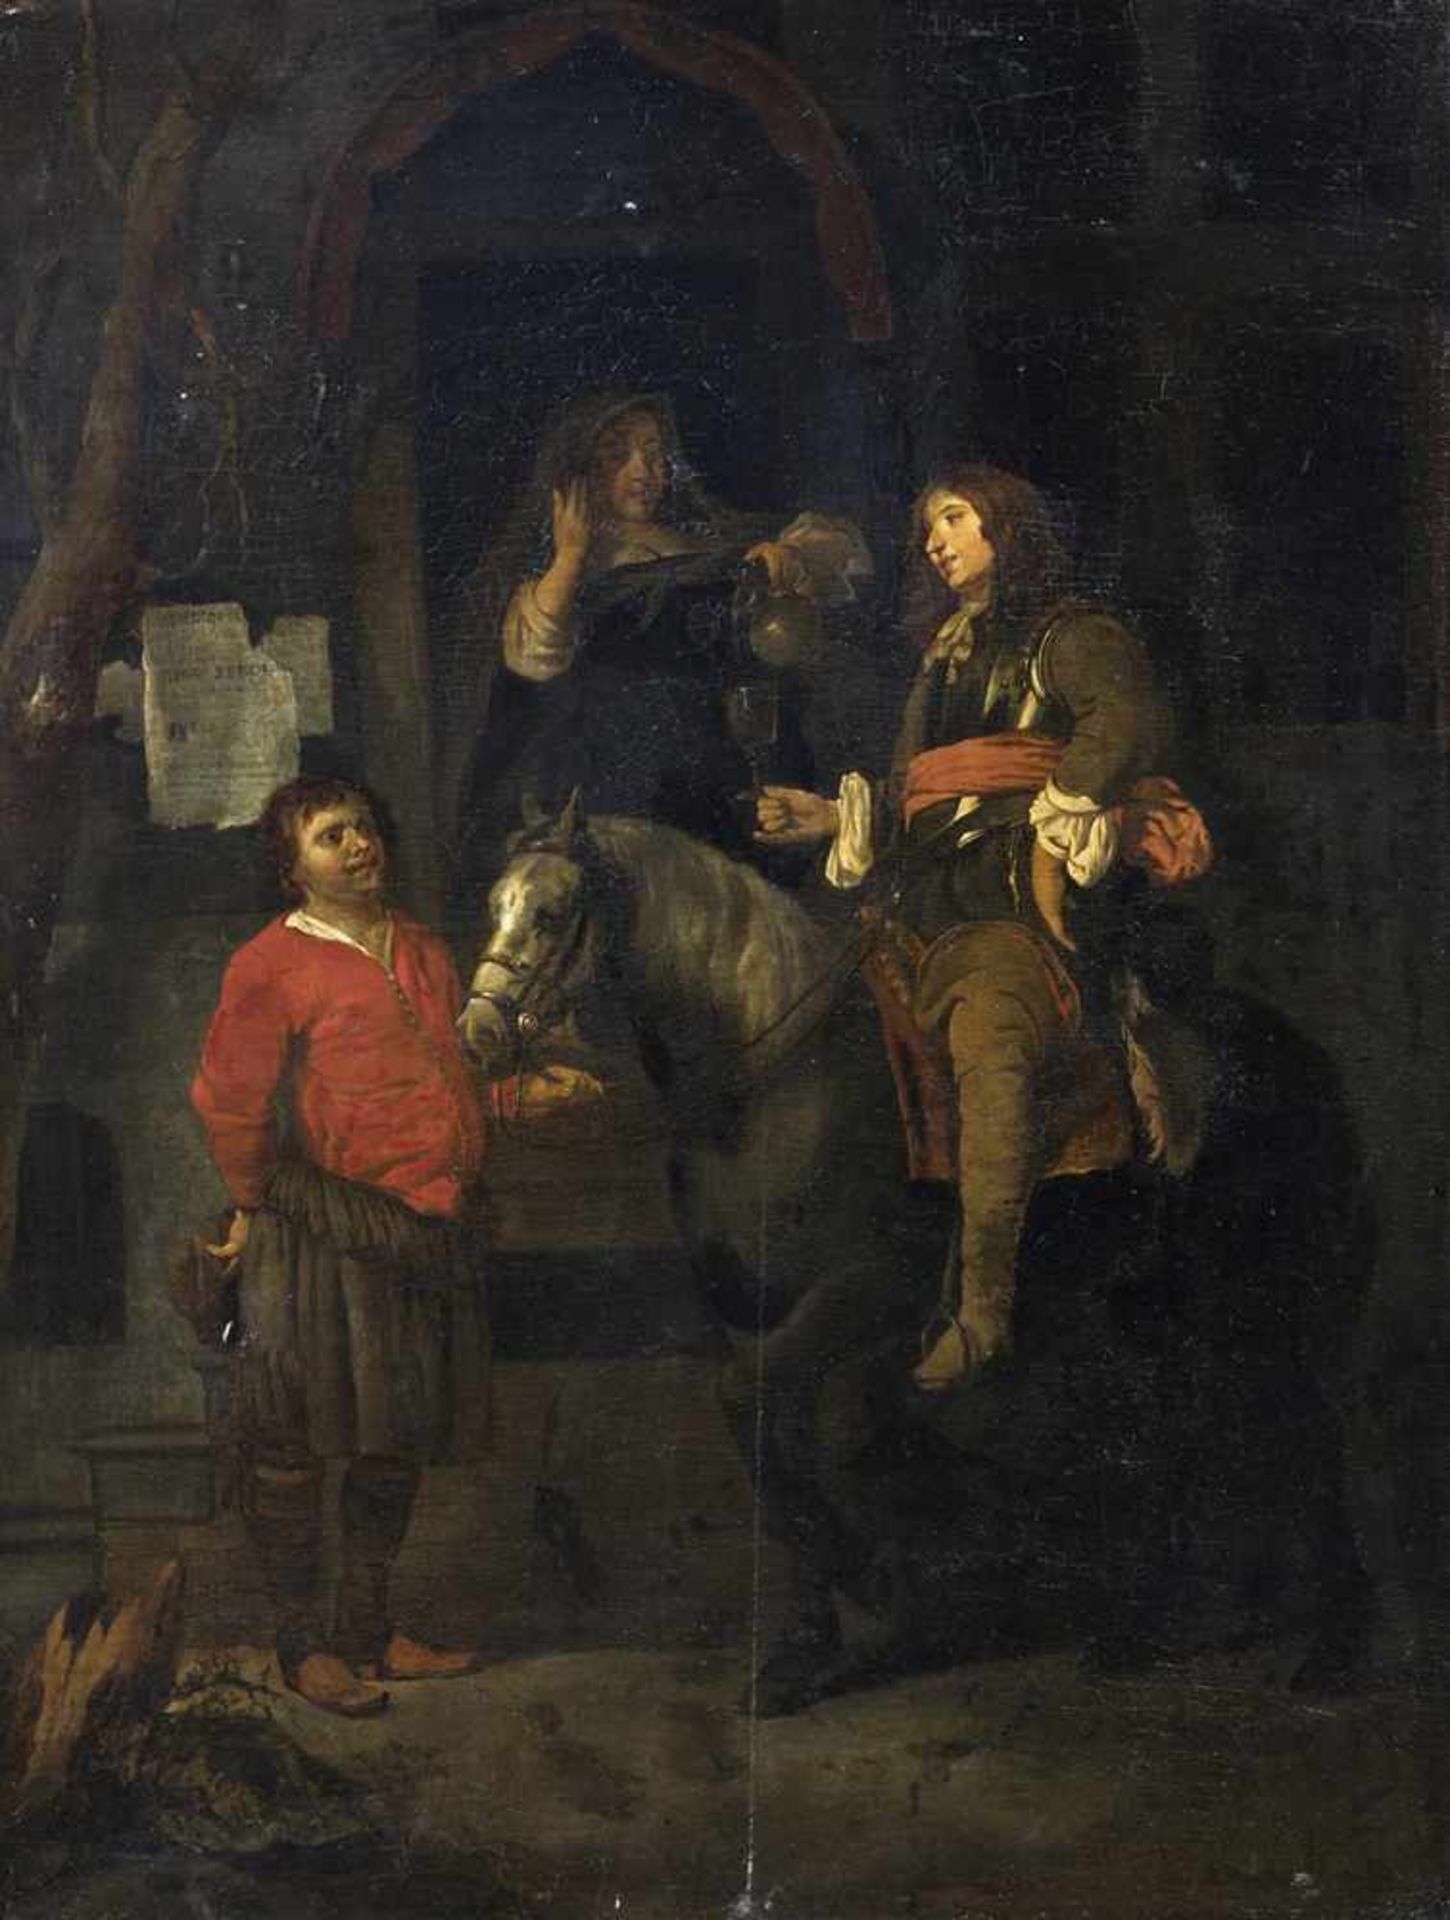 Metsu, Gabriel (nach)Leiden 1629 - Amsterdam 166765 x 49 cmDer Satteltrunk. Öl/Holz, rückseitig